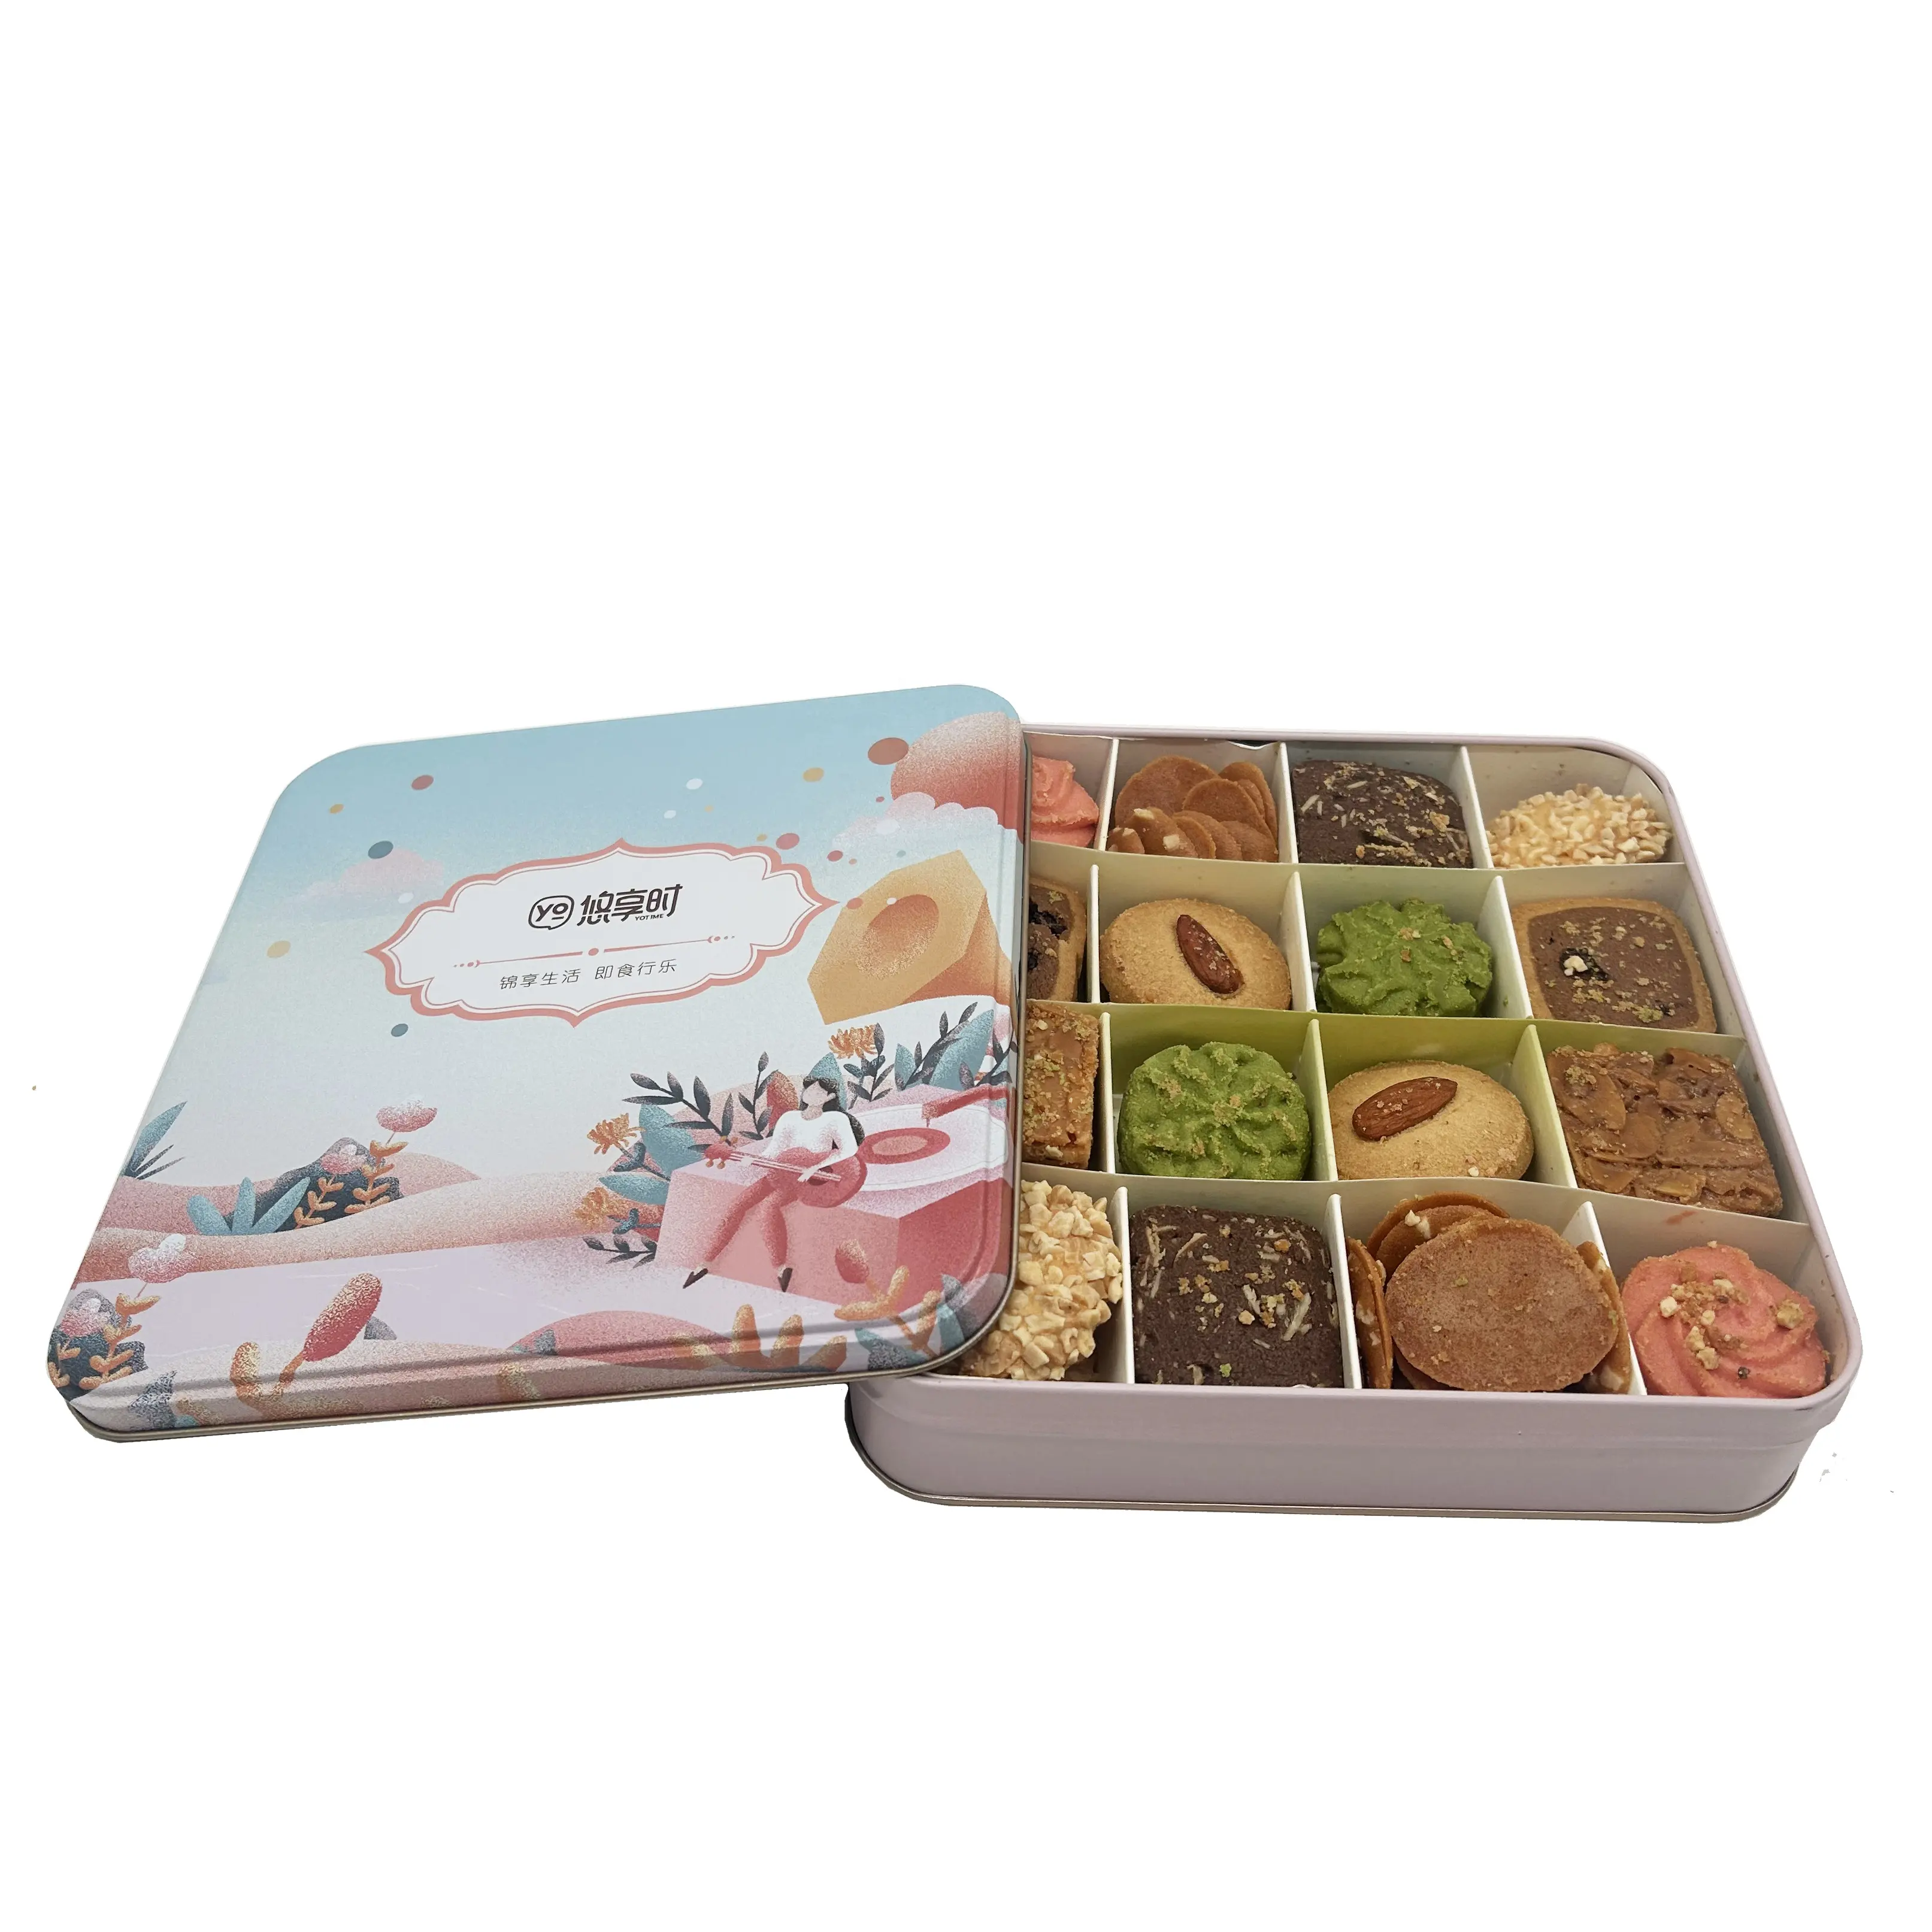 Weihnachts dose Box für Geschenk Süßigkeiten Keks Paket Lebensmittel qualität Weihnachts plätzchen Zinn Box Keks dosen mit Deckel